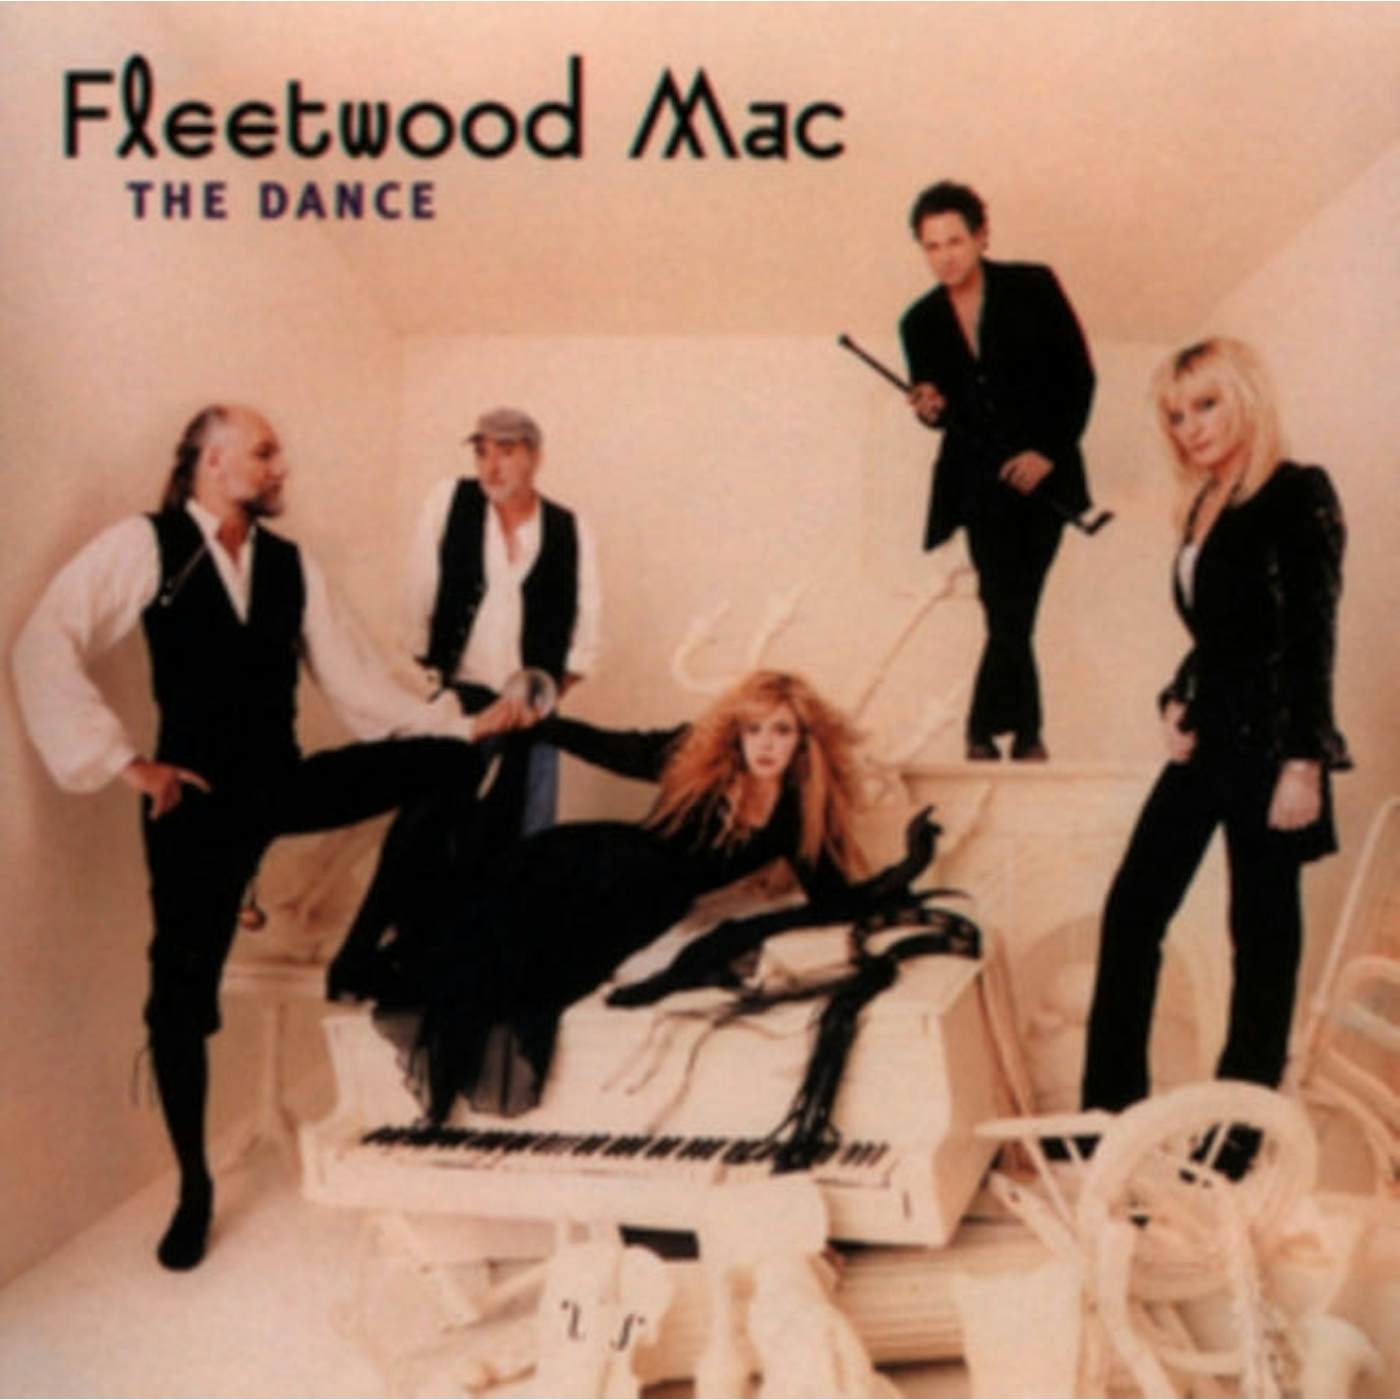 Fleetwood Mac LP Vinyl Record - The Dance